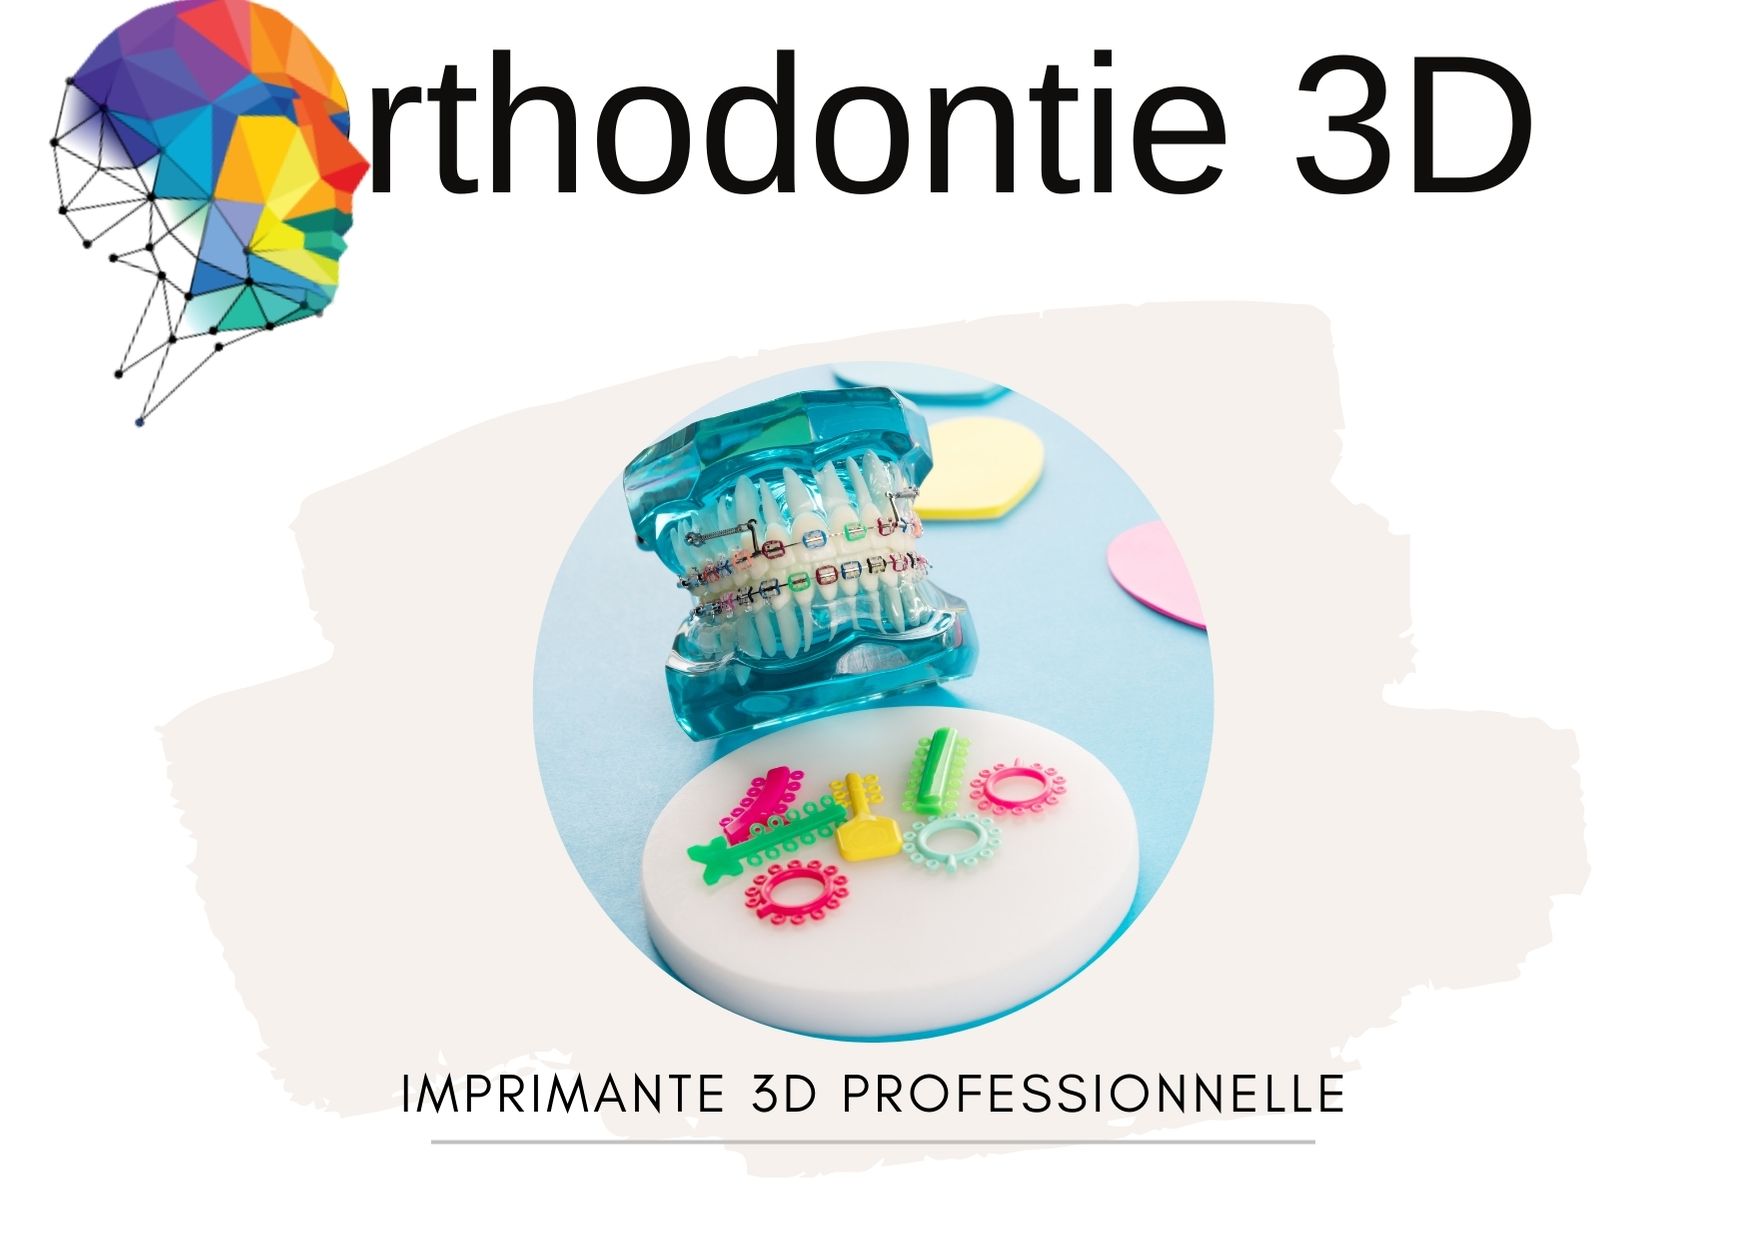 Orthodontie 3D imprimante 3D professionnelle